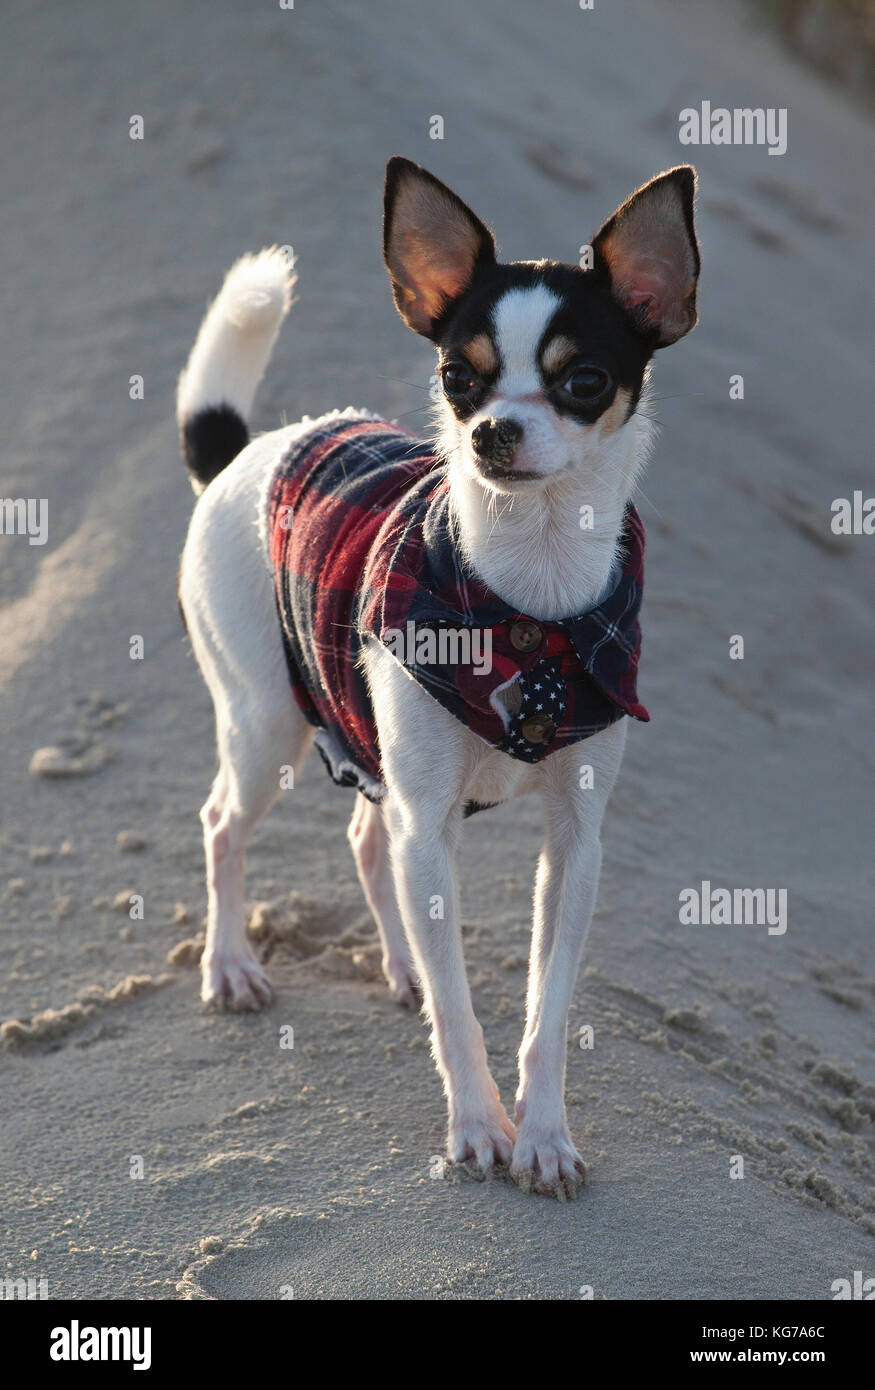 Der Chihuahua Emma steht auf einer kleine Düne im Sand und blickt aufgeregt en die Kamera, el snoopy Chihuahua Emmily se ve encantador con sus grandes orejas Foto de stock